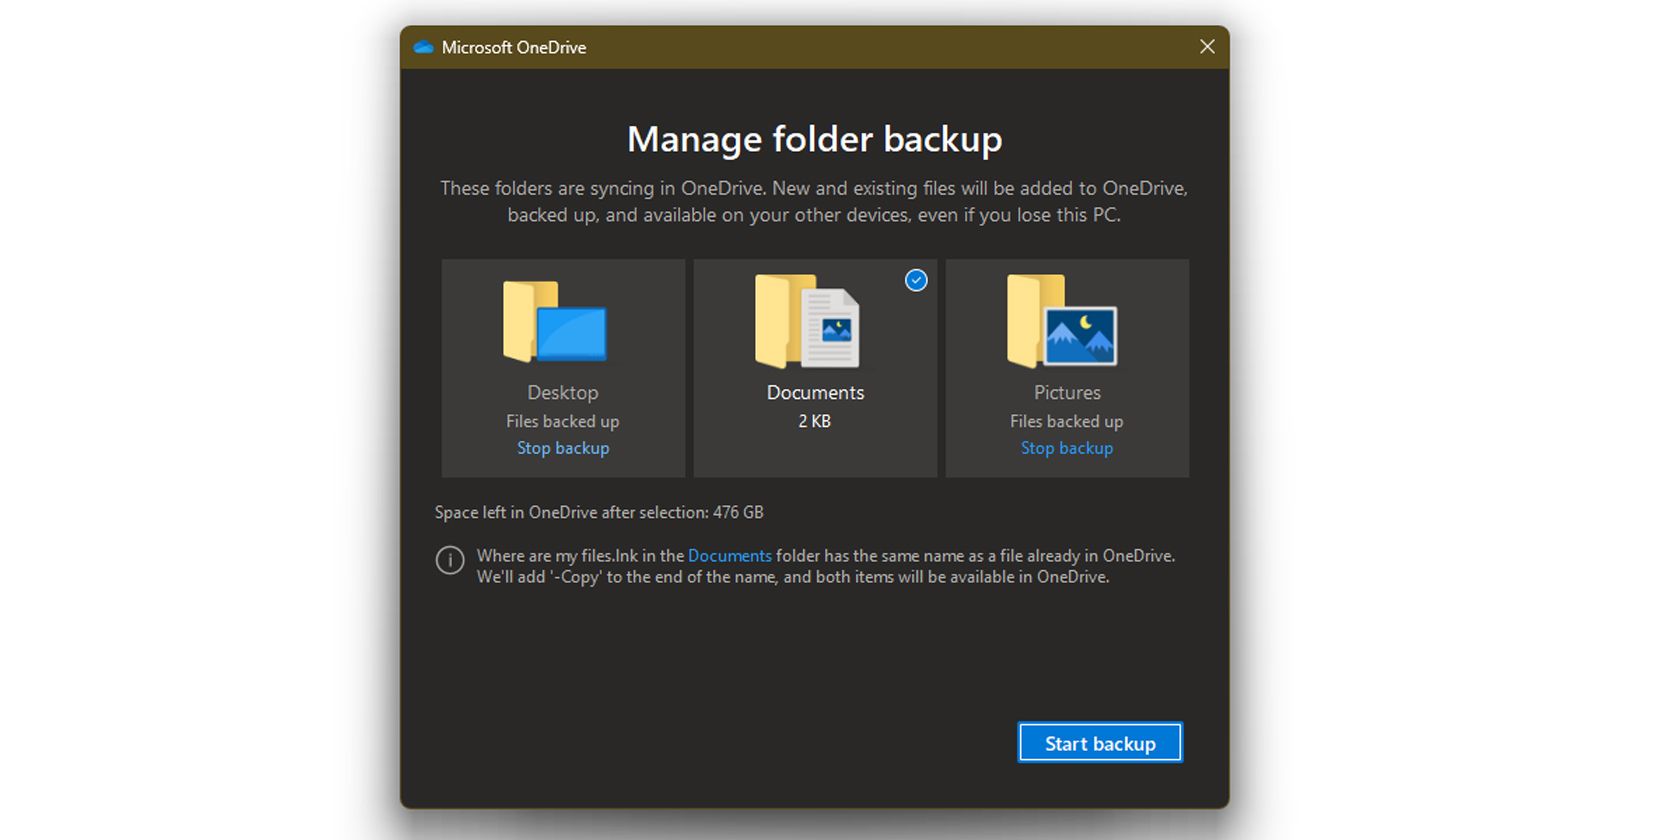 Manage folder backups on Microsoft OneDrive